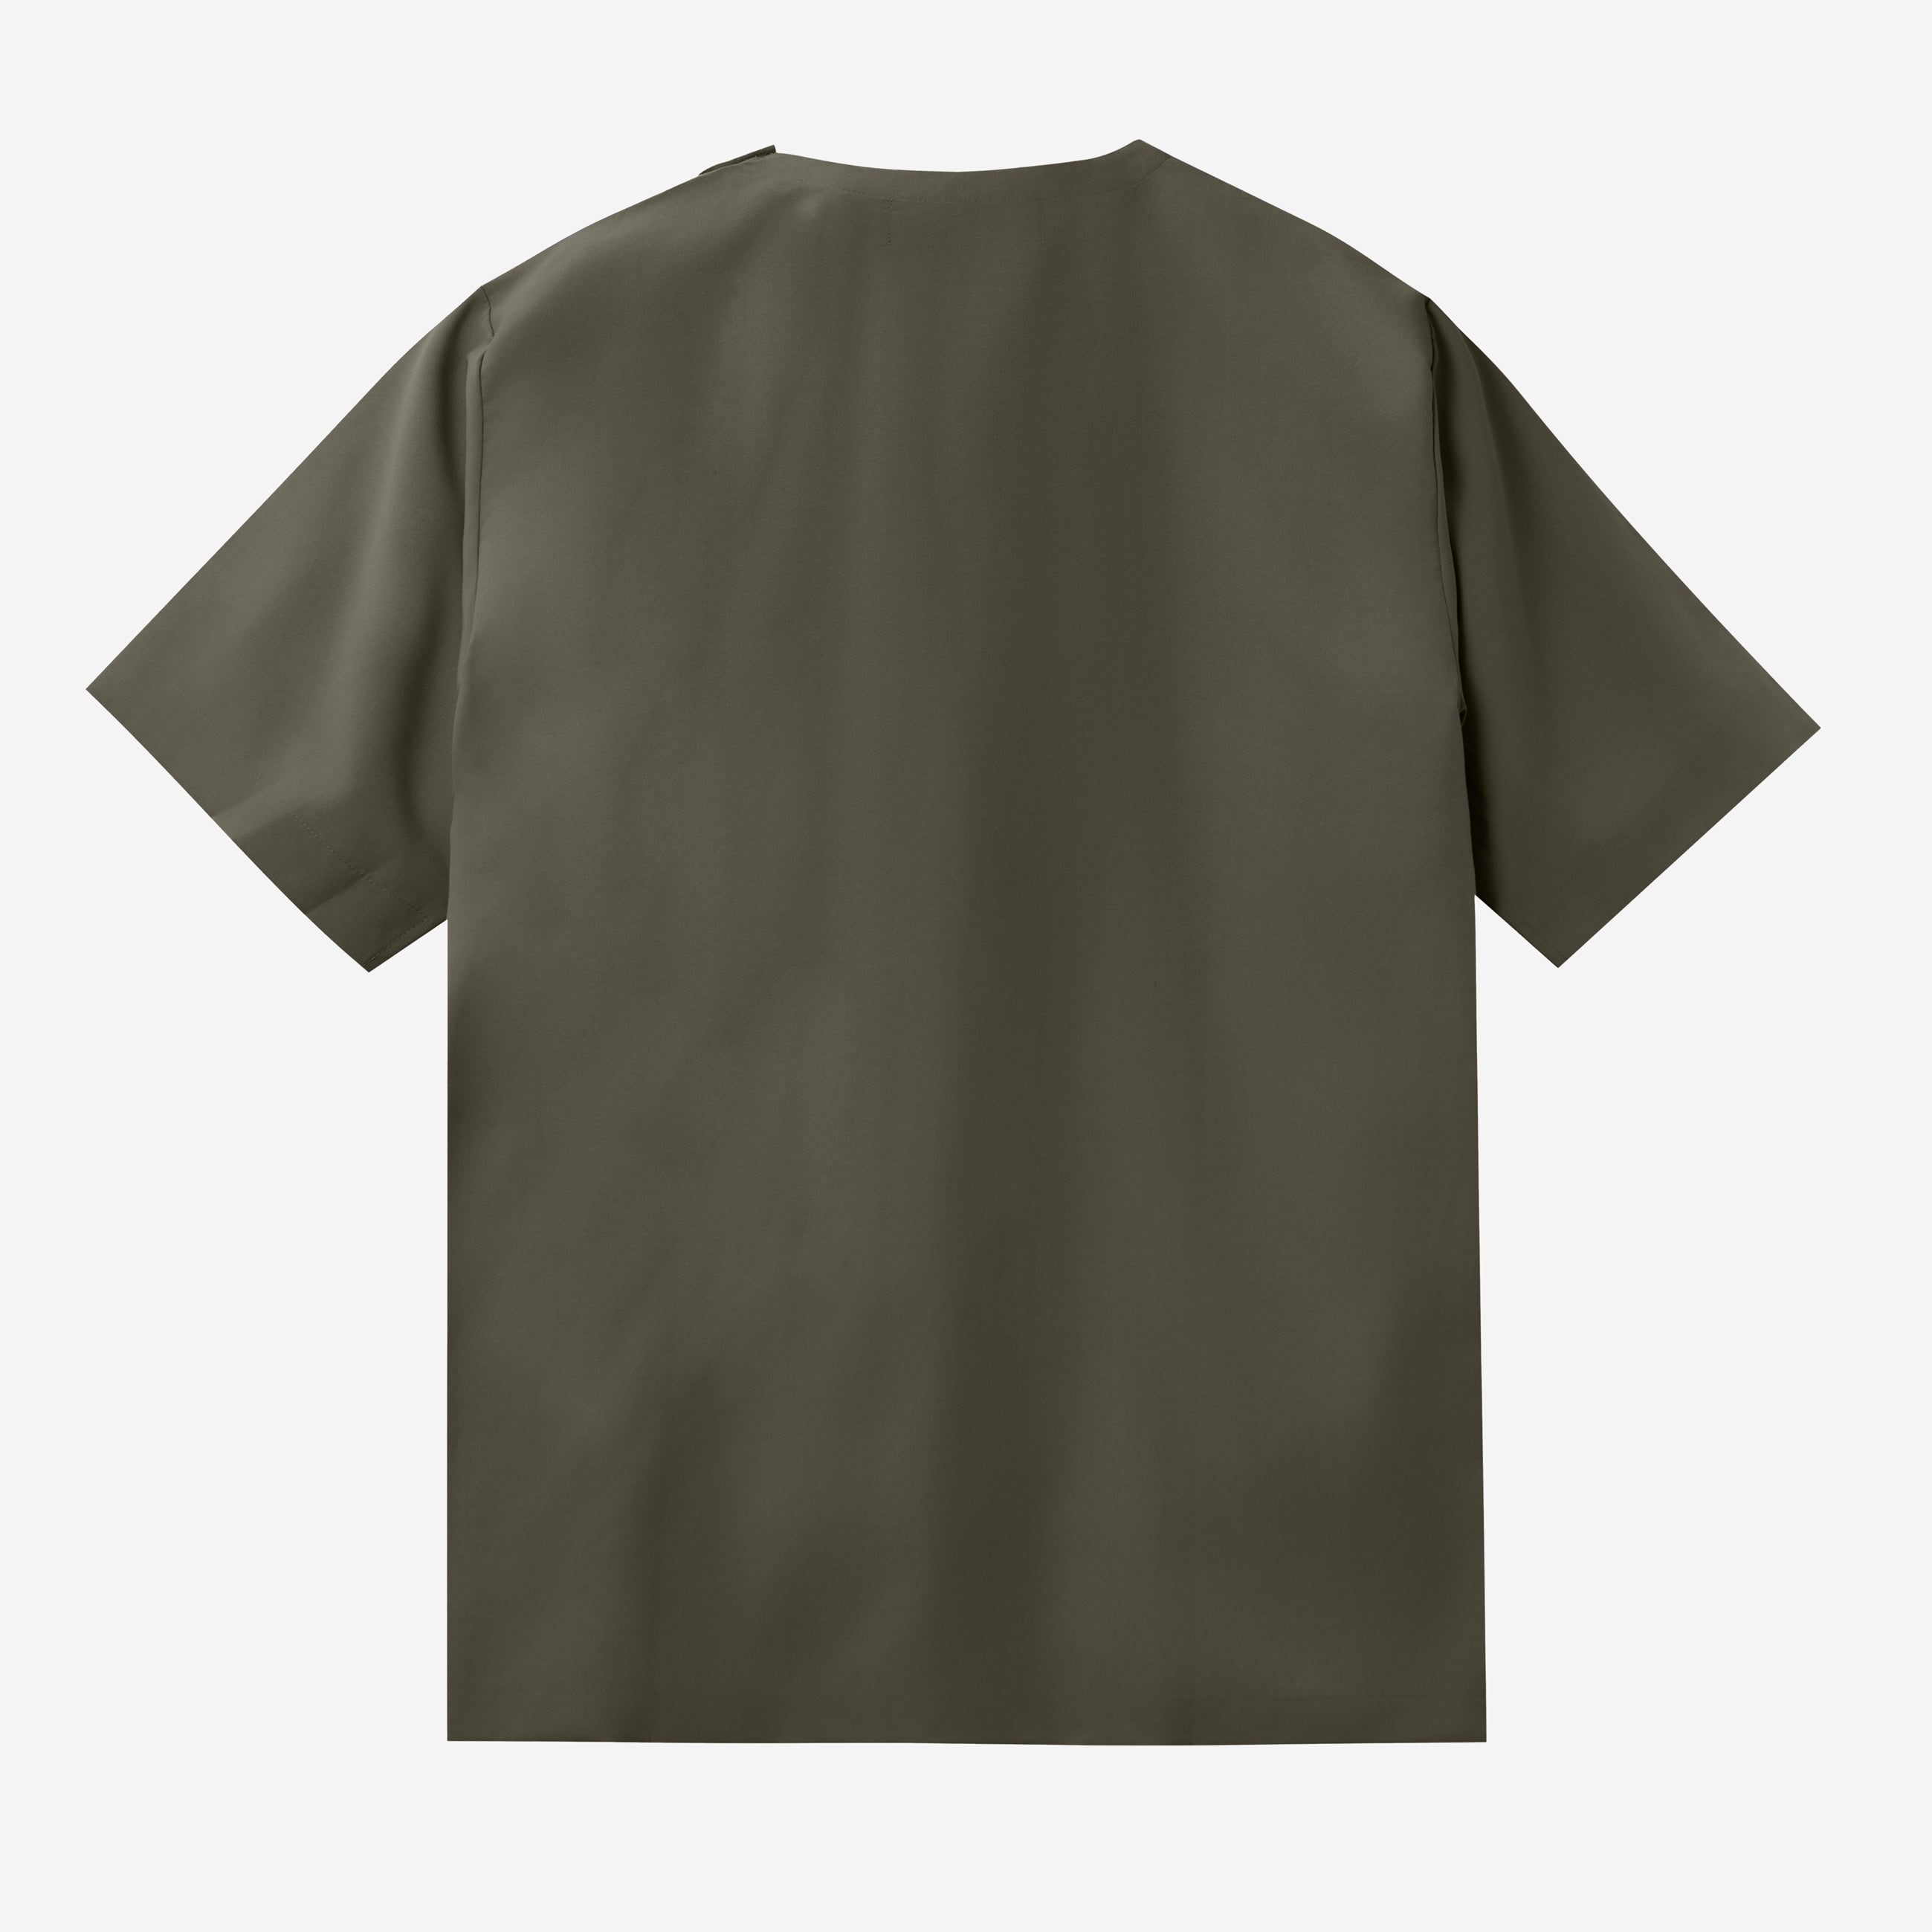 Rahab T-shirt - Olive